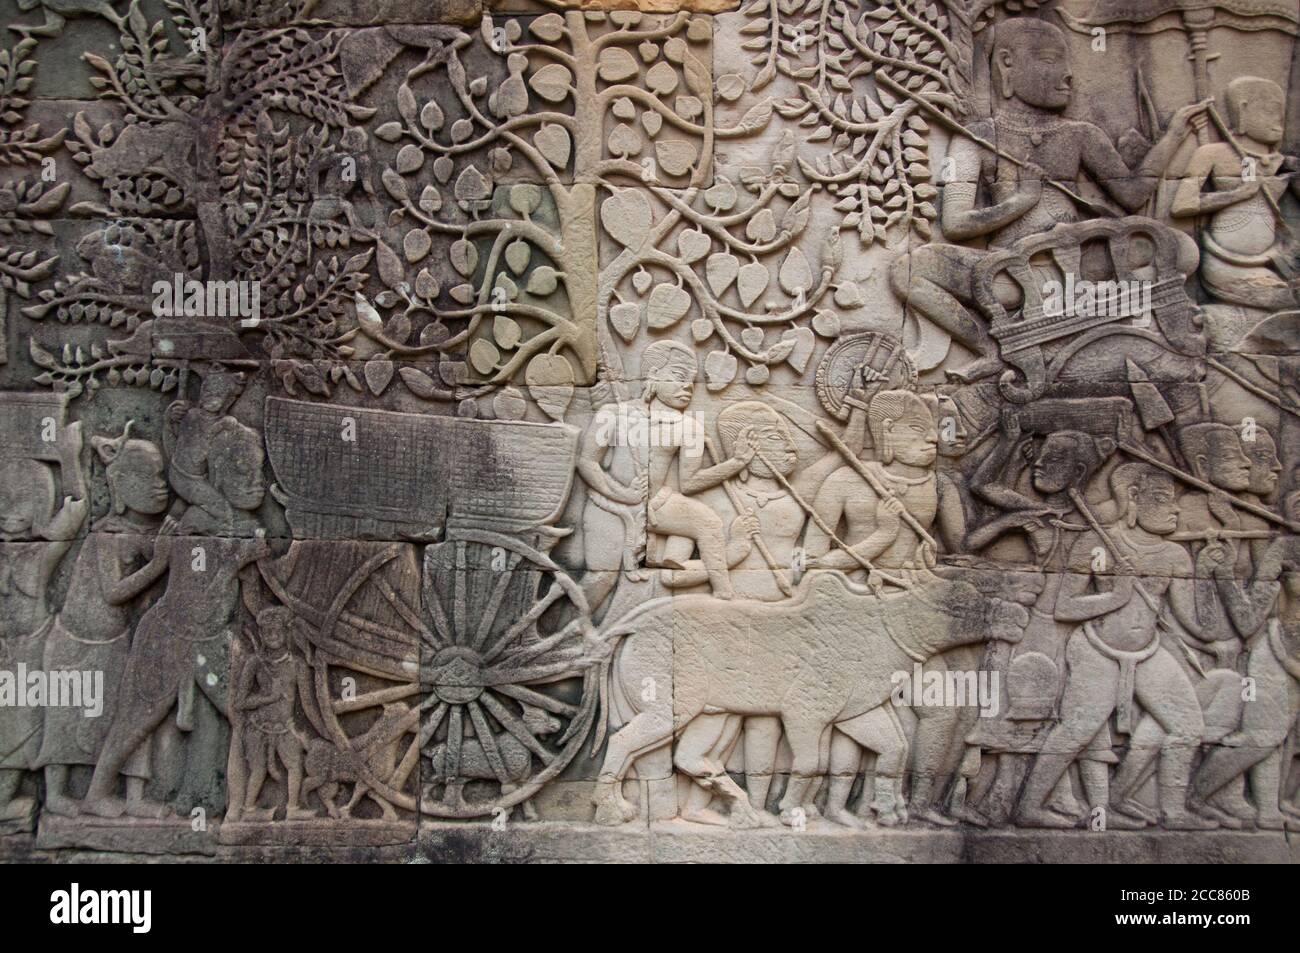 Kambodscha: Ochsenkarre mit Frauen und Kindern, die der Khmer-Armee in die Schlacht folgen, Bas-Relief Eastern Wall, Southern Section, the Bayon, Angkor Thom. Der Bayon war ursprünglich der offizielle Staatstempel des Mahayana Buddhistischen Königs Jayavarman VII. Das Bayon, im Zentrum von Angkor Thom (große Stadt), wurde im 12. Jahrhundert von König Jayavarman VII. Gegründet Angkor Thom, was ‘die große Stadt’ bedeutet, liegt eine Meile nördlich von Angkor Wat. Es wurde im späten 12. Jahrhundert CE von König Jayavarman VII. Gebaut Stockfoto